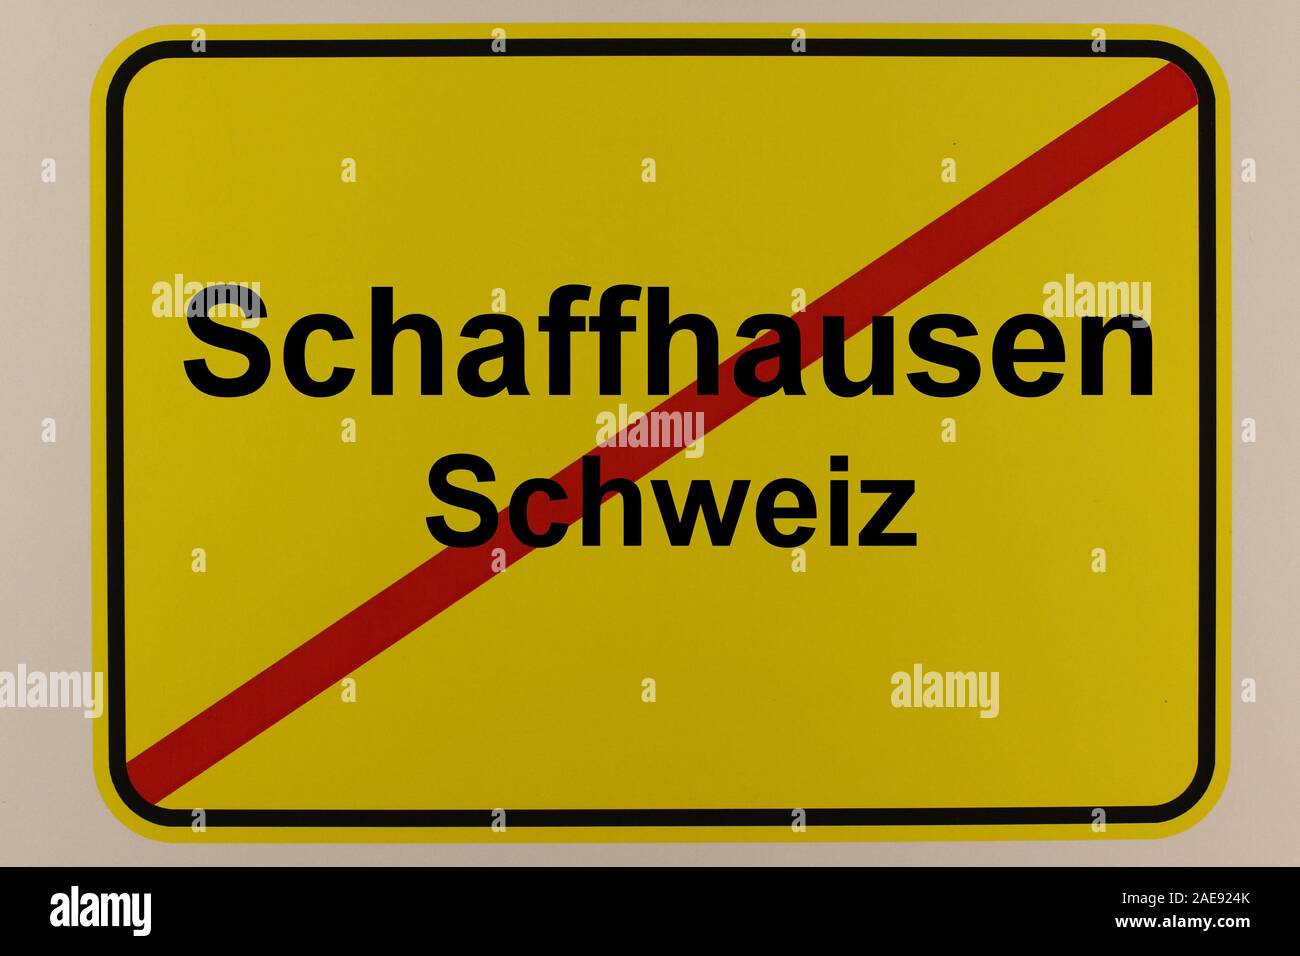 Illustration eines Ortsausgangsschildes mit dem Schriftzug Schaffhausen und Schweiz Stock Photo